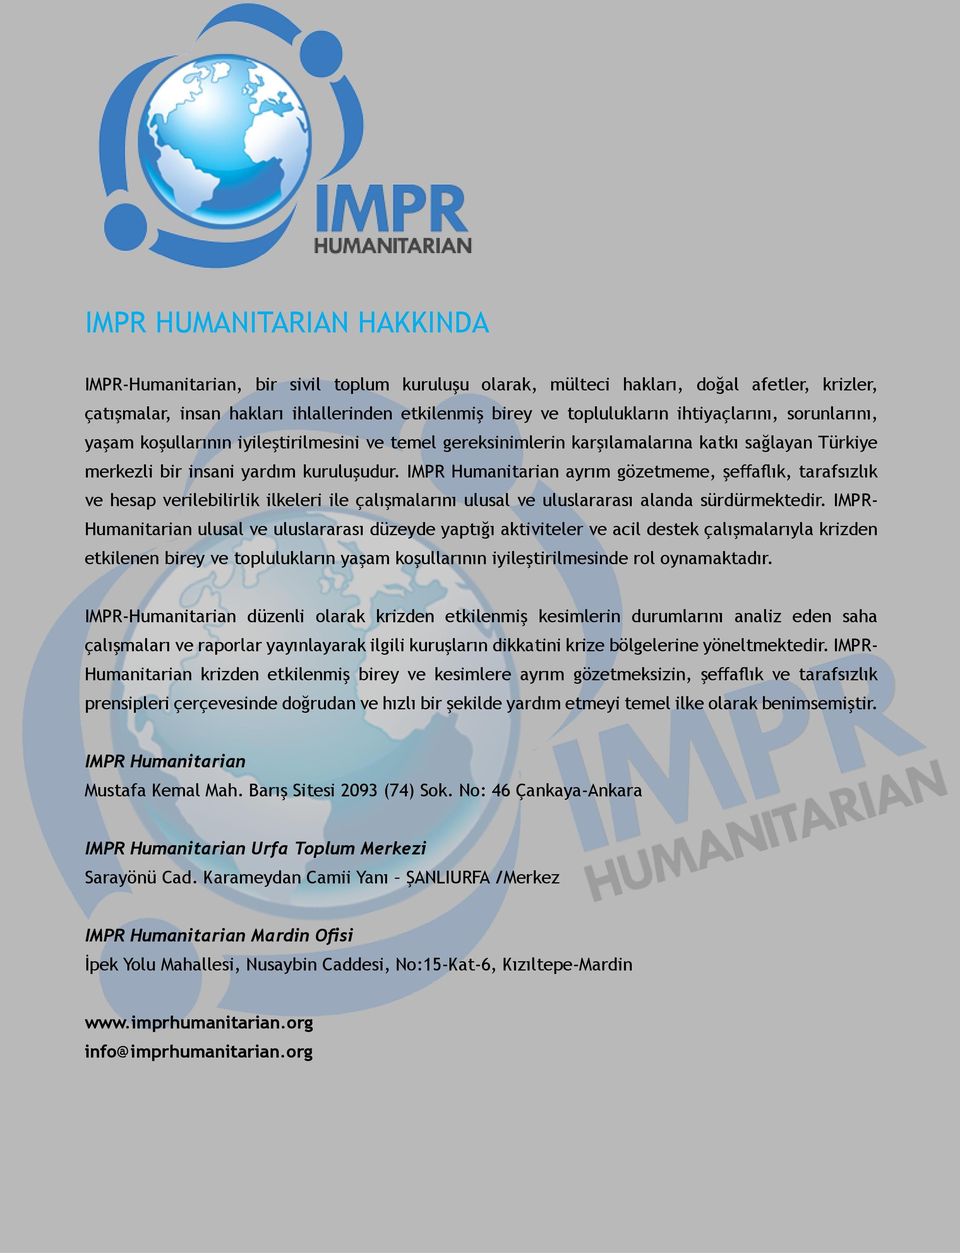 IMPR Humanitarian ayrım gözetmeme, şeffaflık, tarafsızlık ve hesap verilebilirlik ilkeleri ile çalışmalarını ulusal ve uluslararası alanda sürdürmektedir.